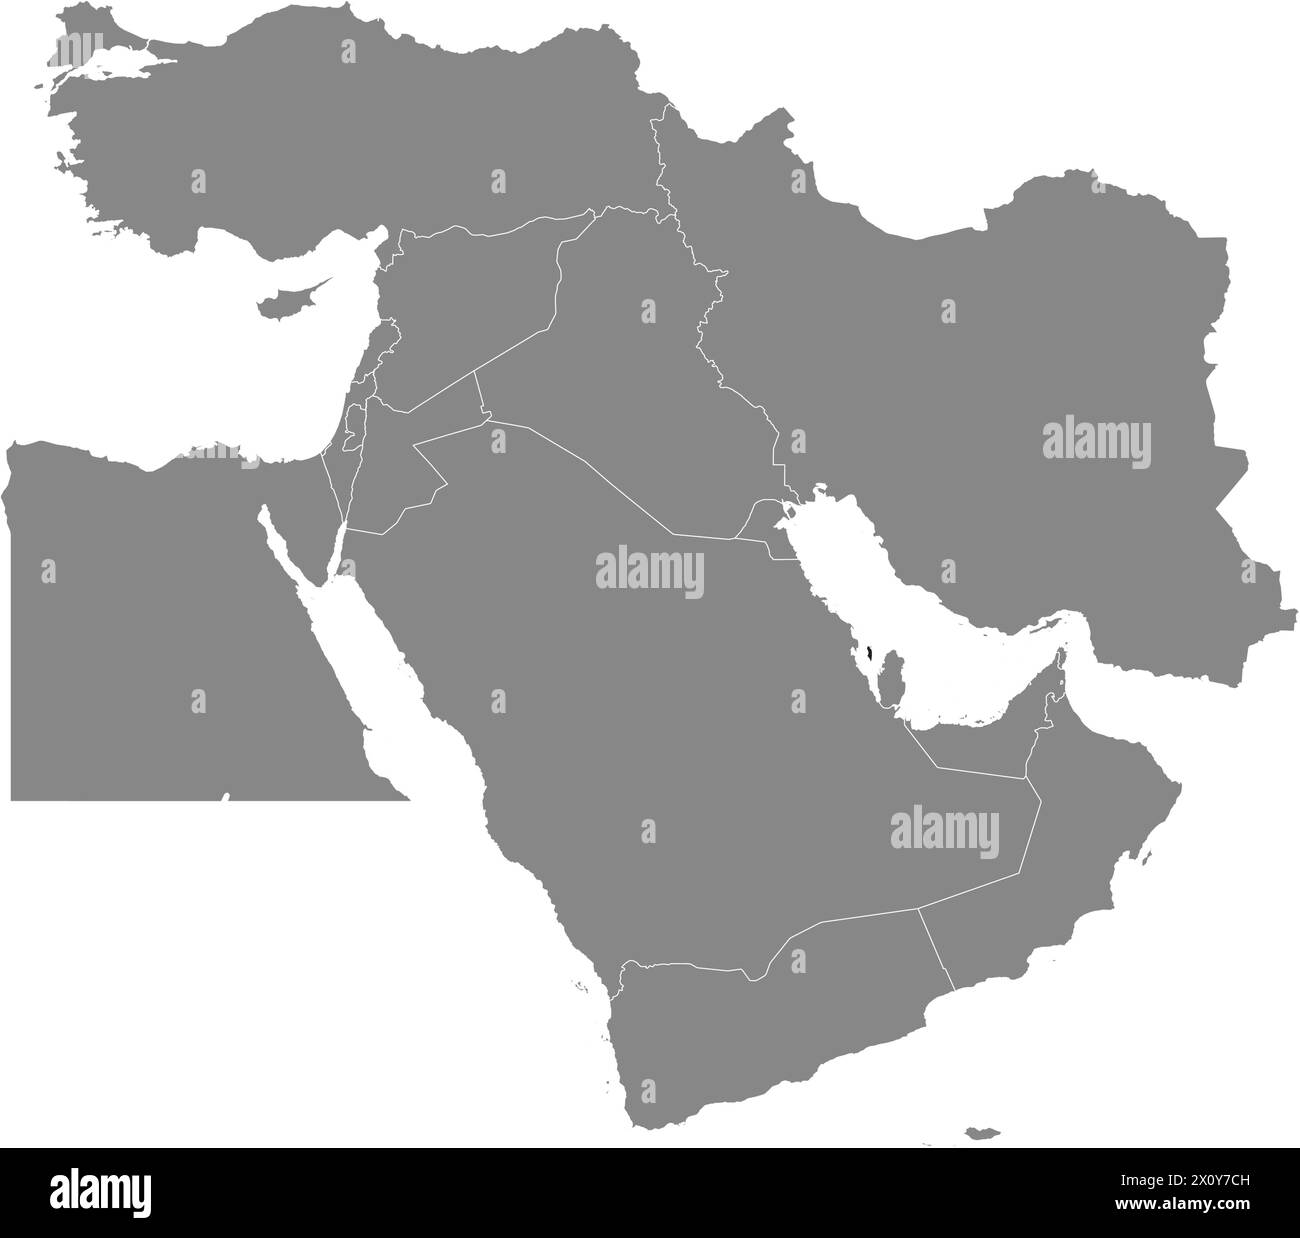 Carte noire de BAHREÏN à l'intérieur de la carte grise du moyen-Orient Illustration de Vecteur